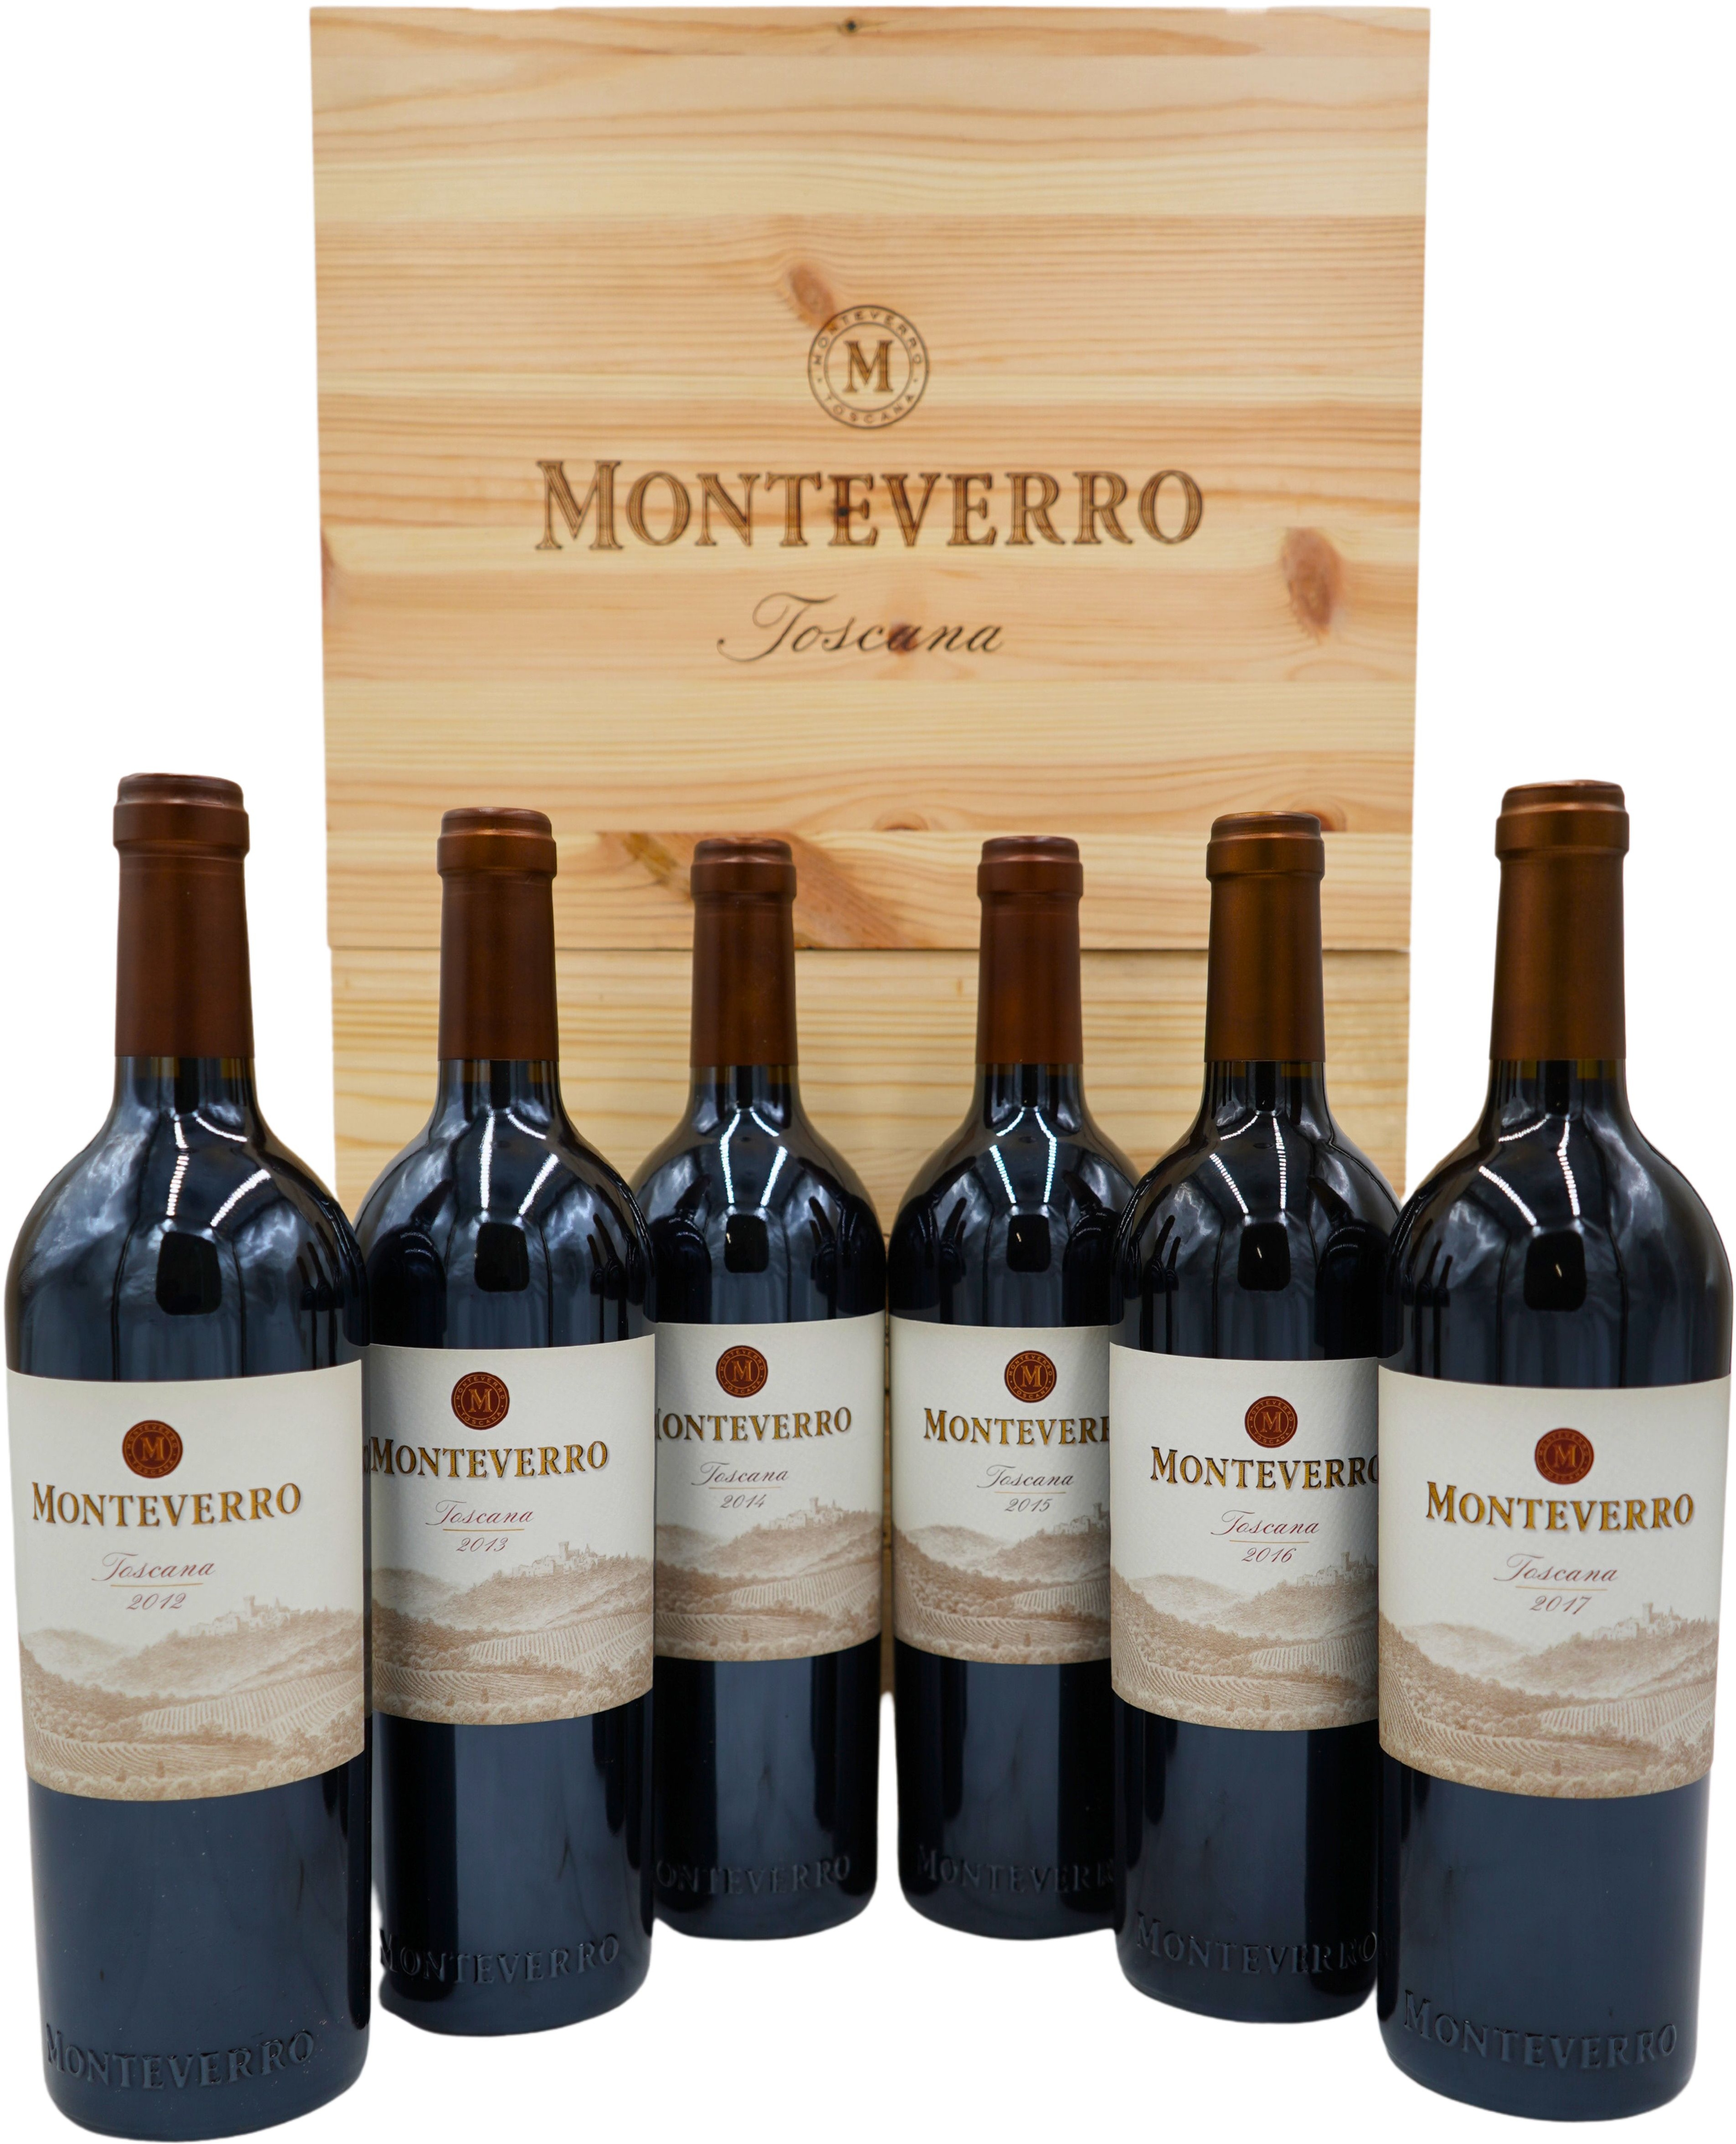 Vertikale Monteverro 2012 - 2017